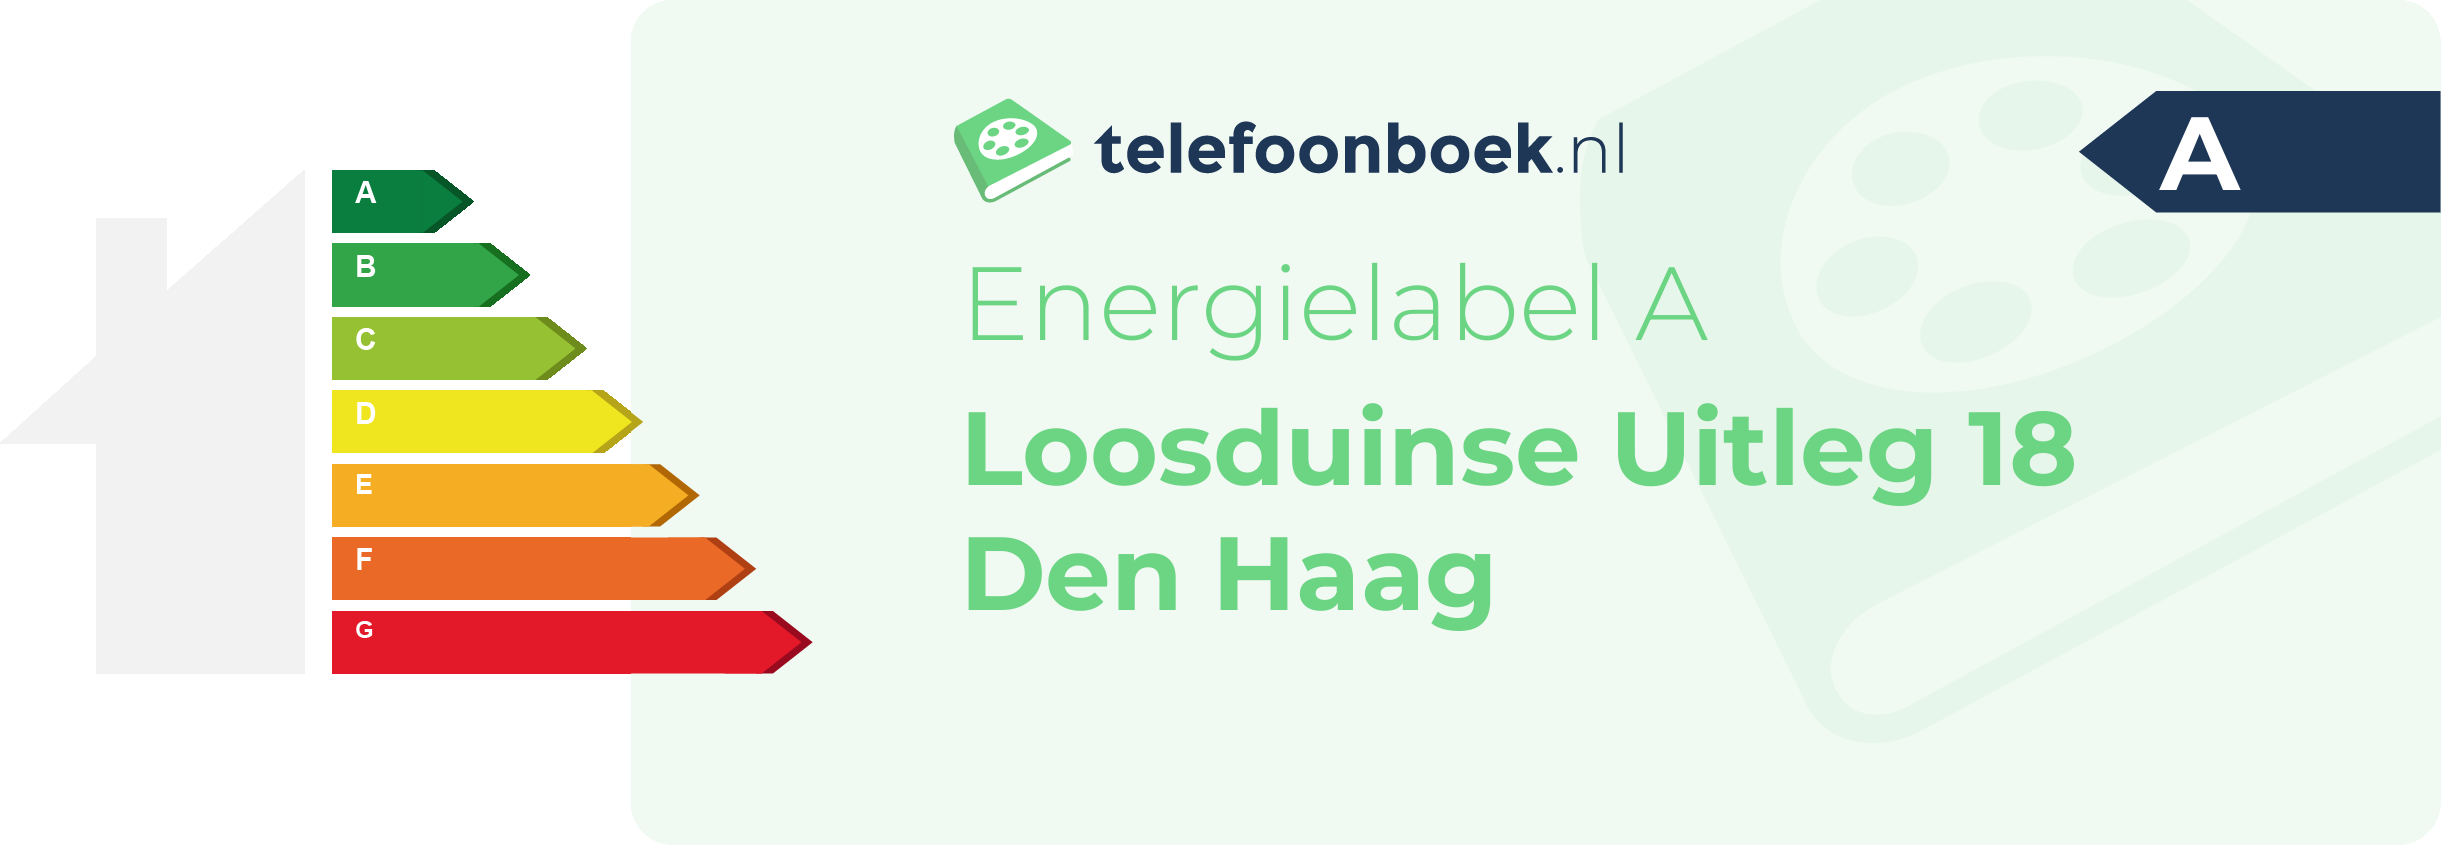 Energielabel Loosduinse Uitleg 18 Den Haag